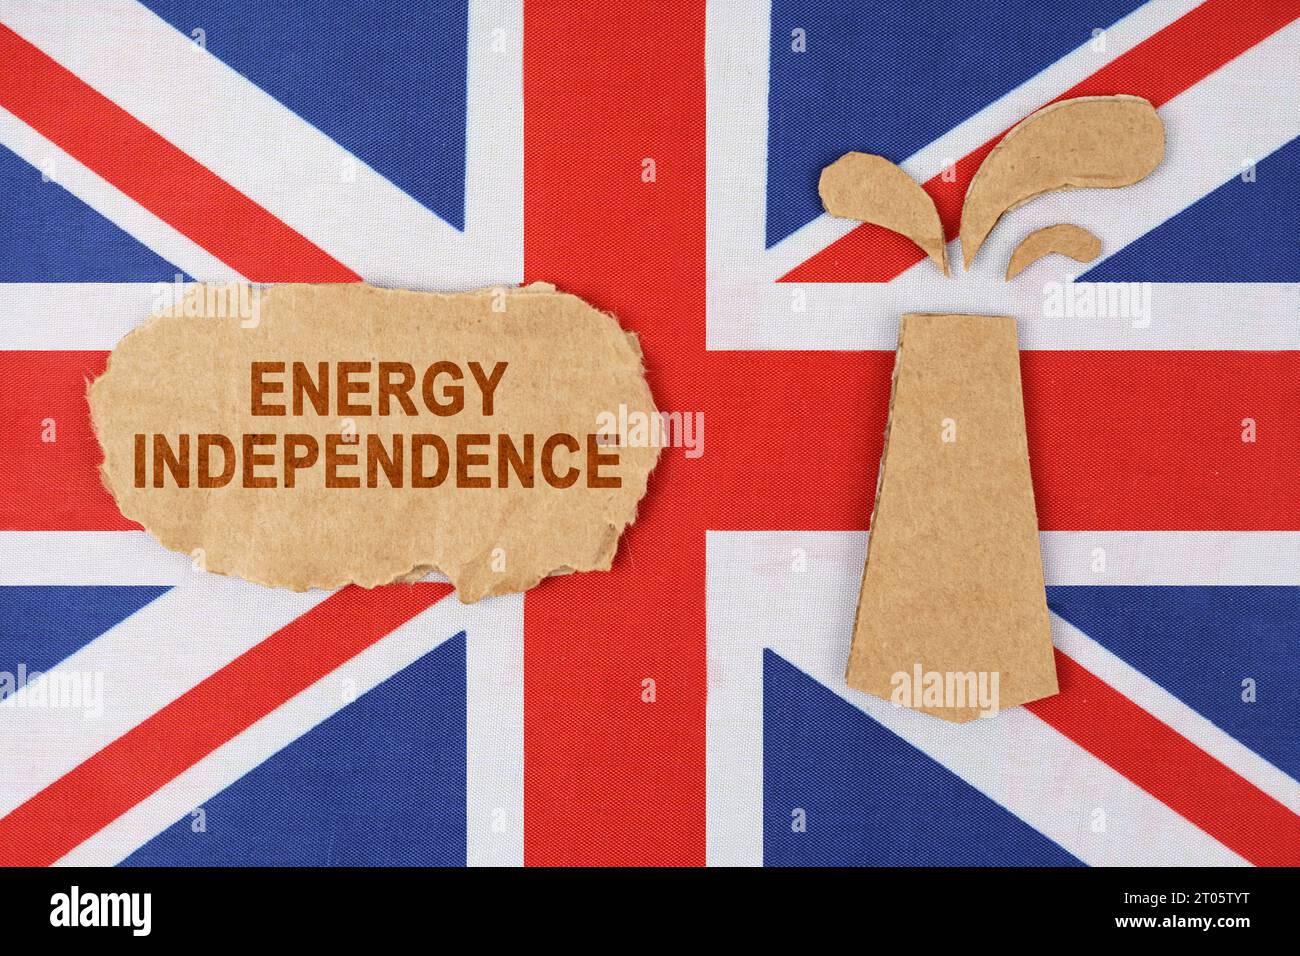 Sulla bandiera della Gran Bretagna c'è una piattaforma petrolifera tagliata di cartone e un cartello con l'iscrizione "indipendenza energetica". Foto Stock